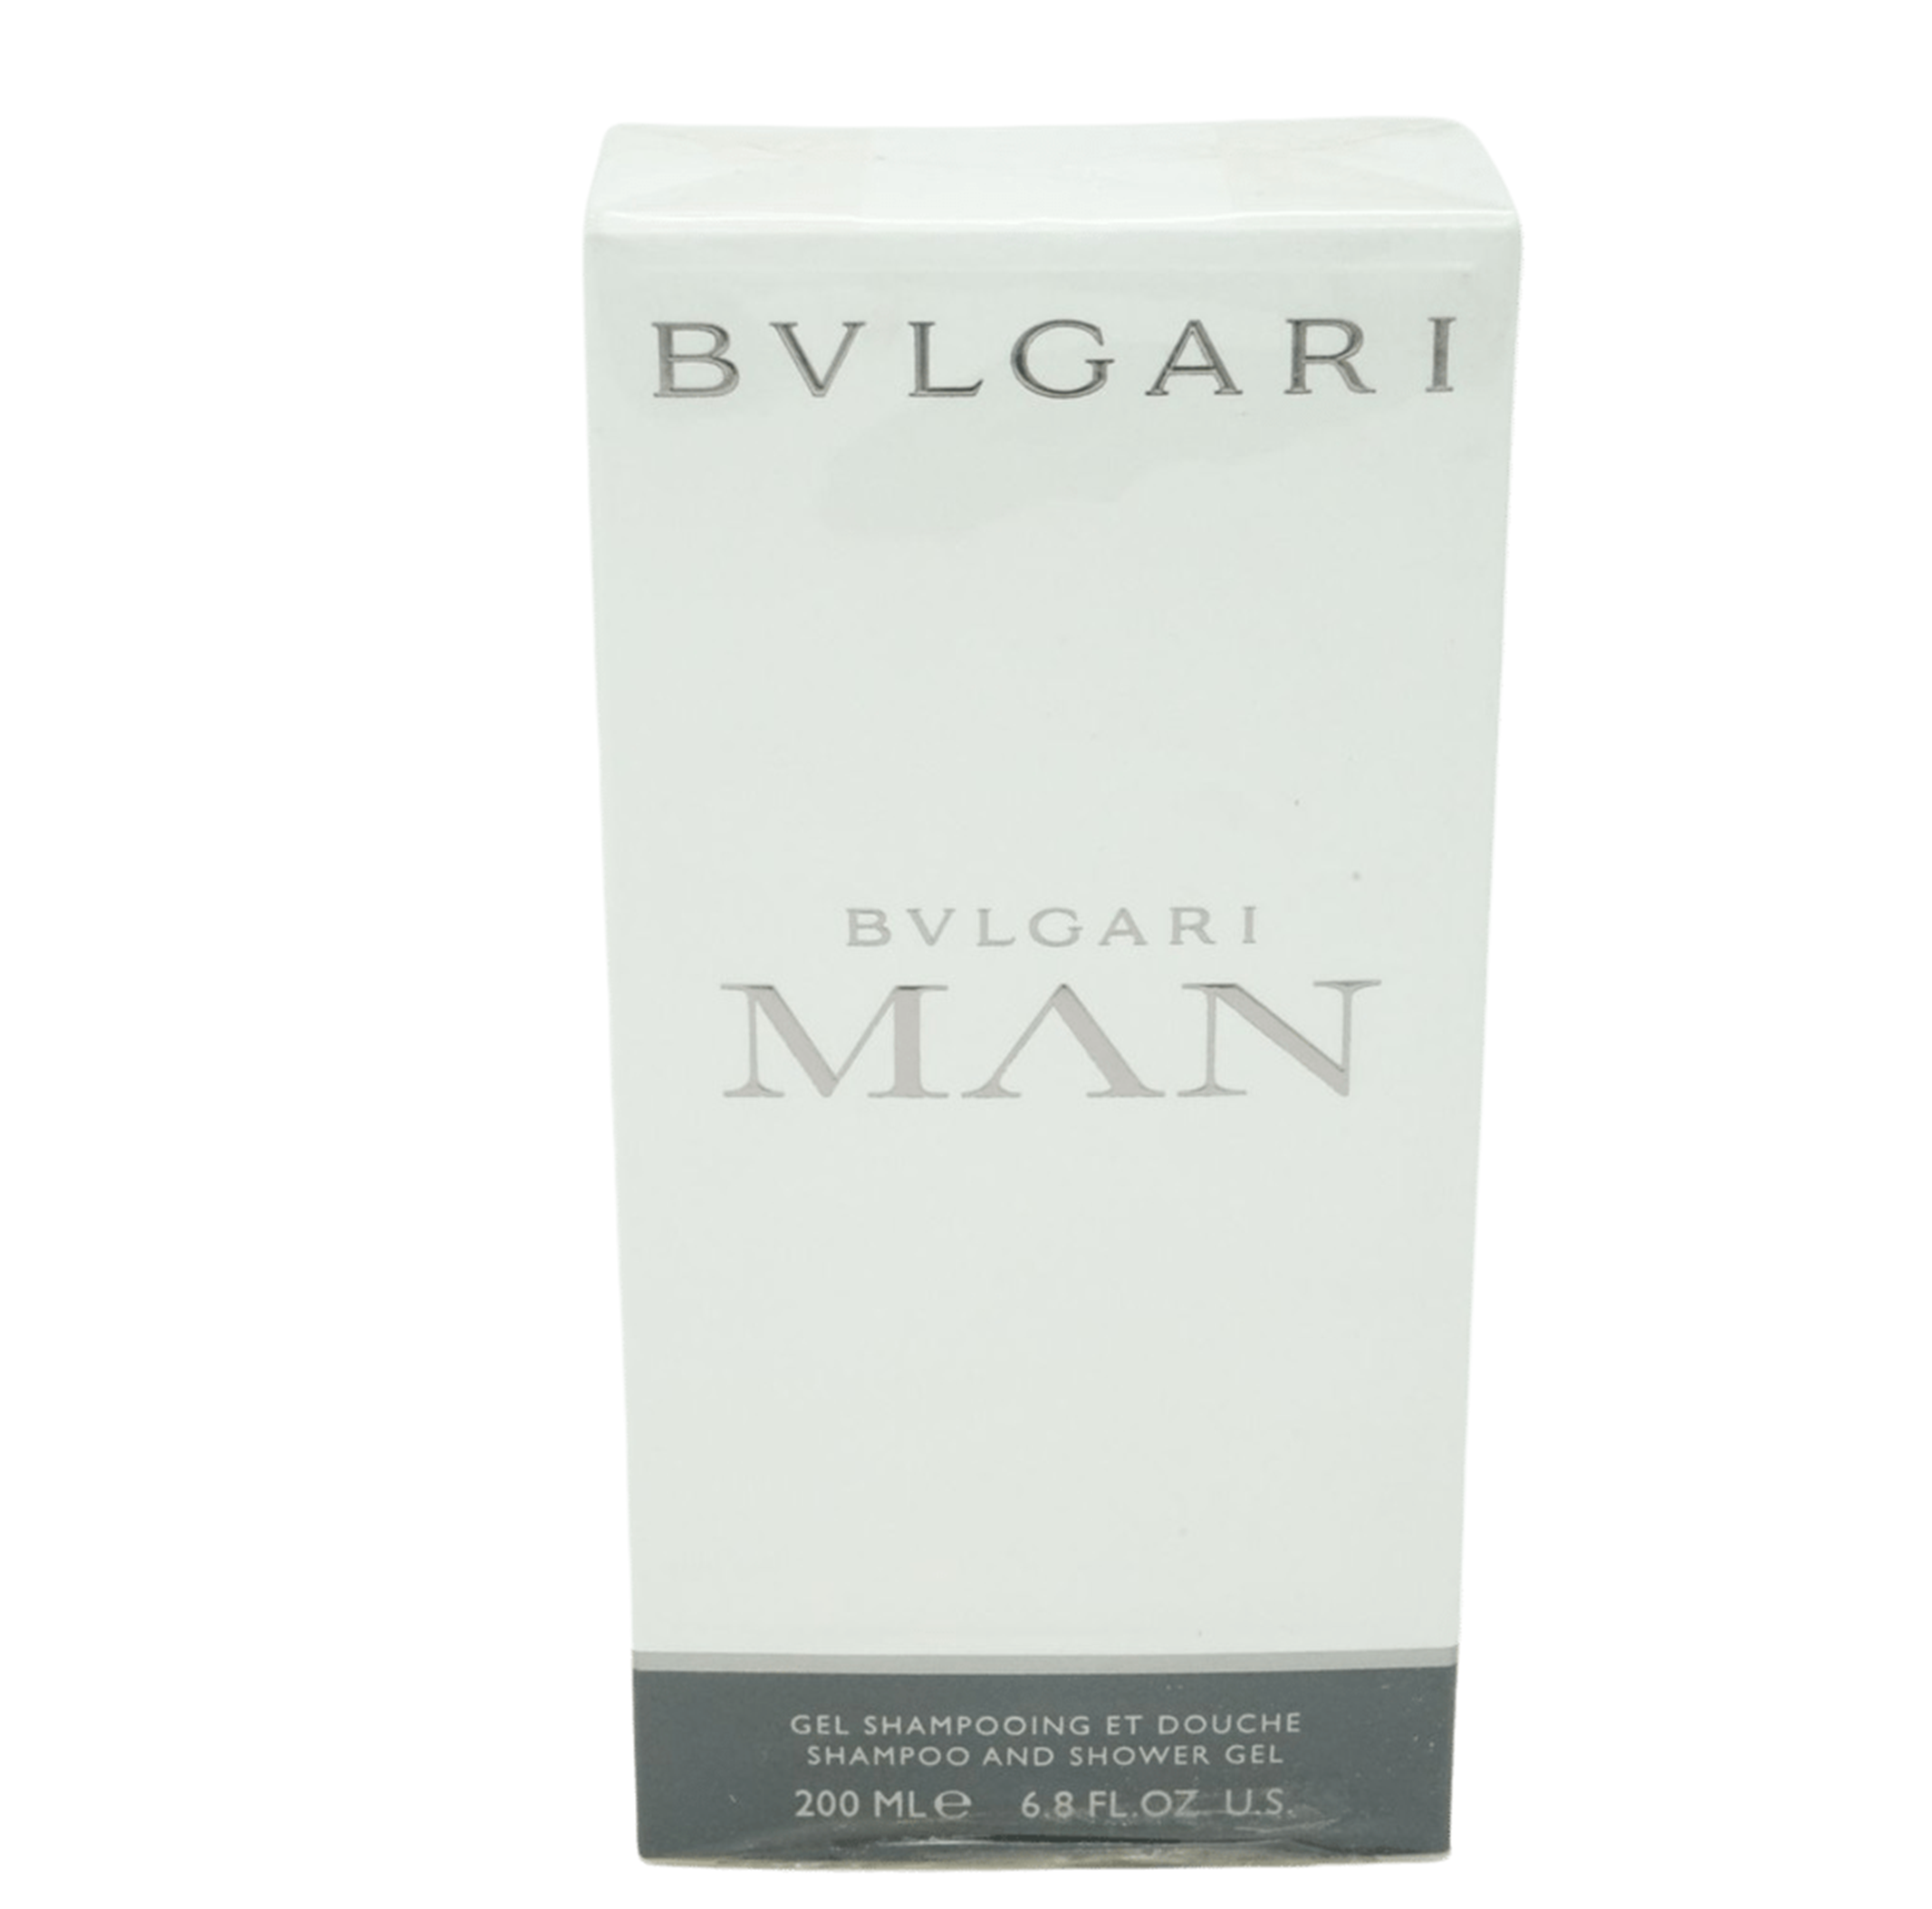 Bvlgari Man Shampoo and Shower Gel 200ml